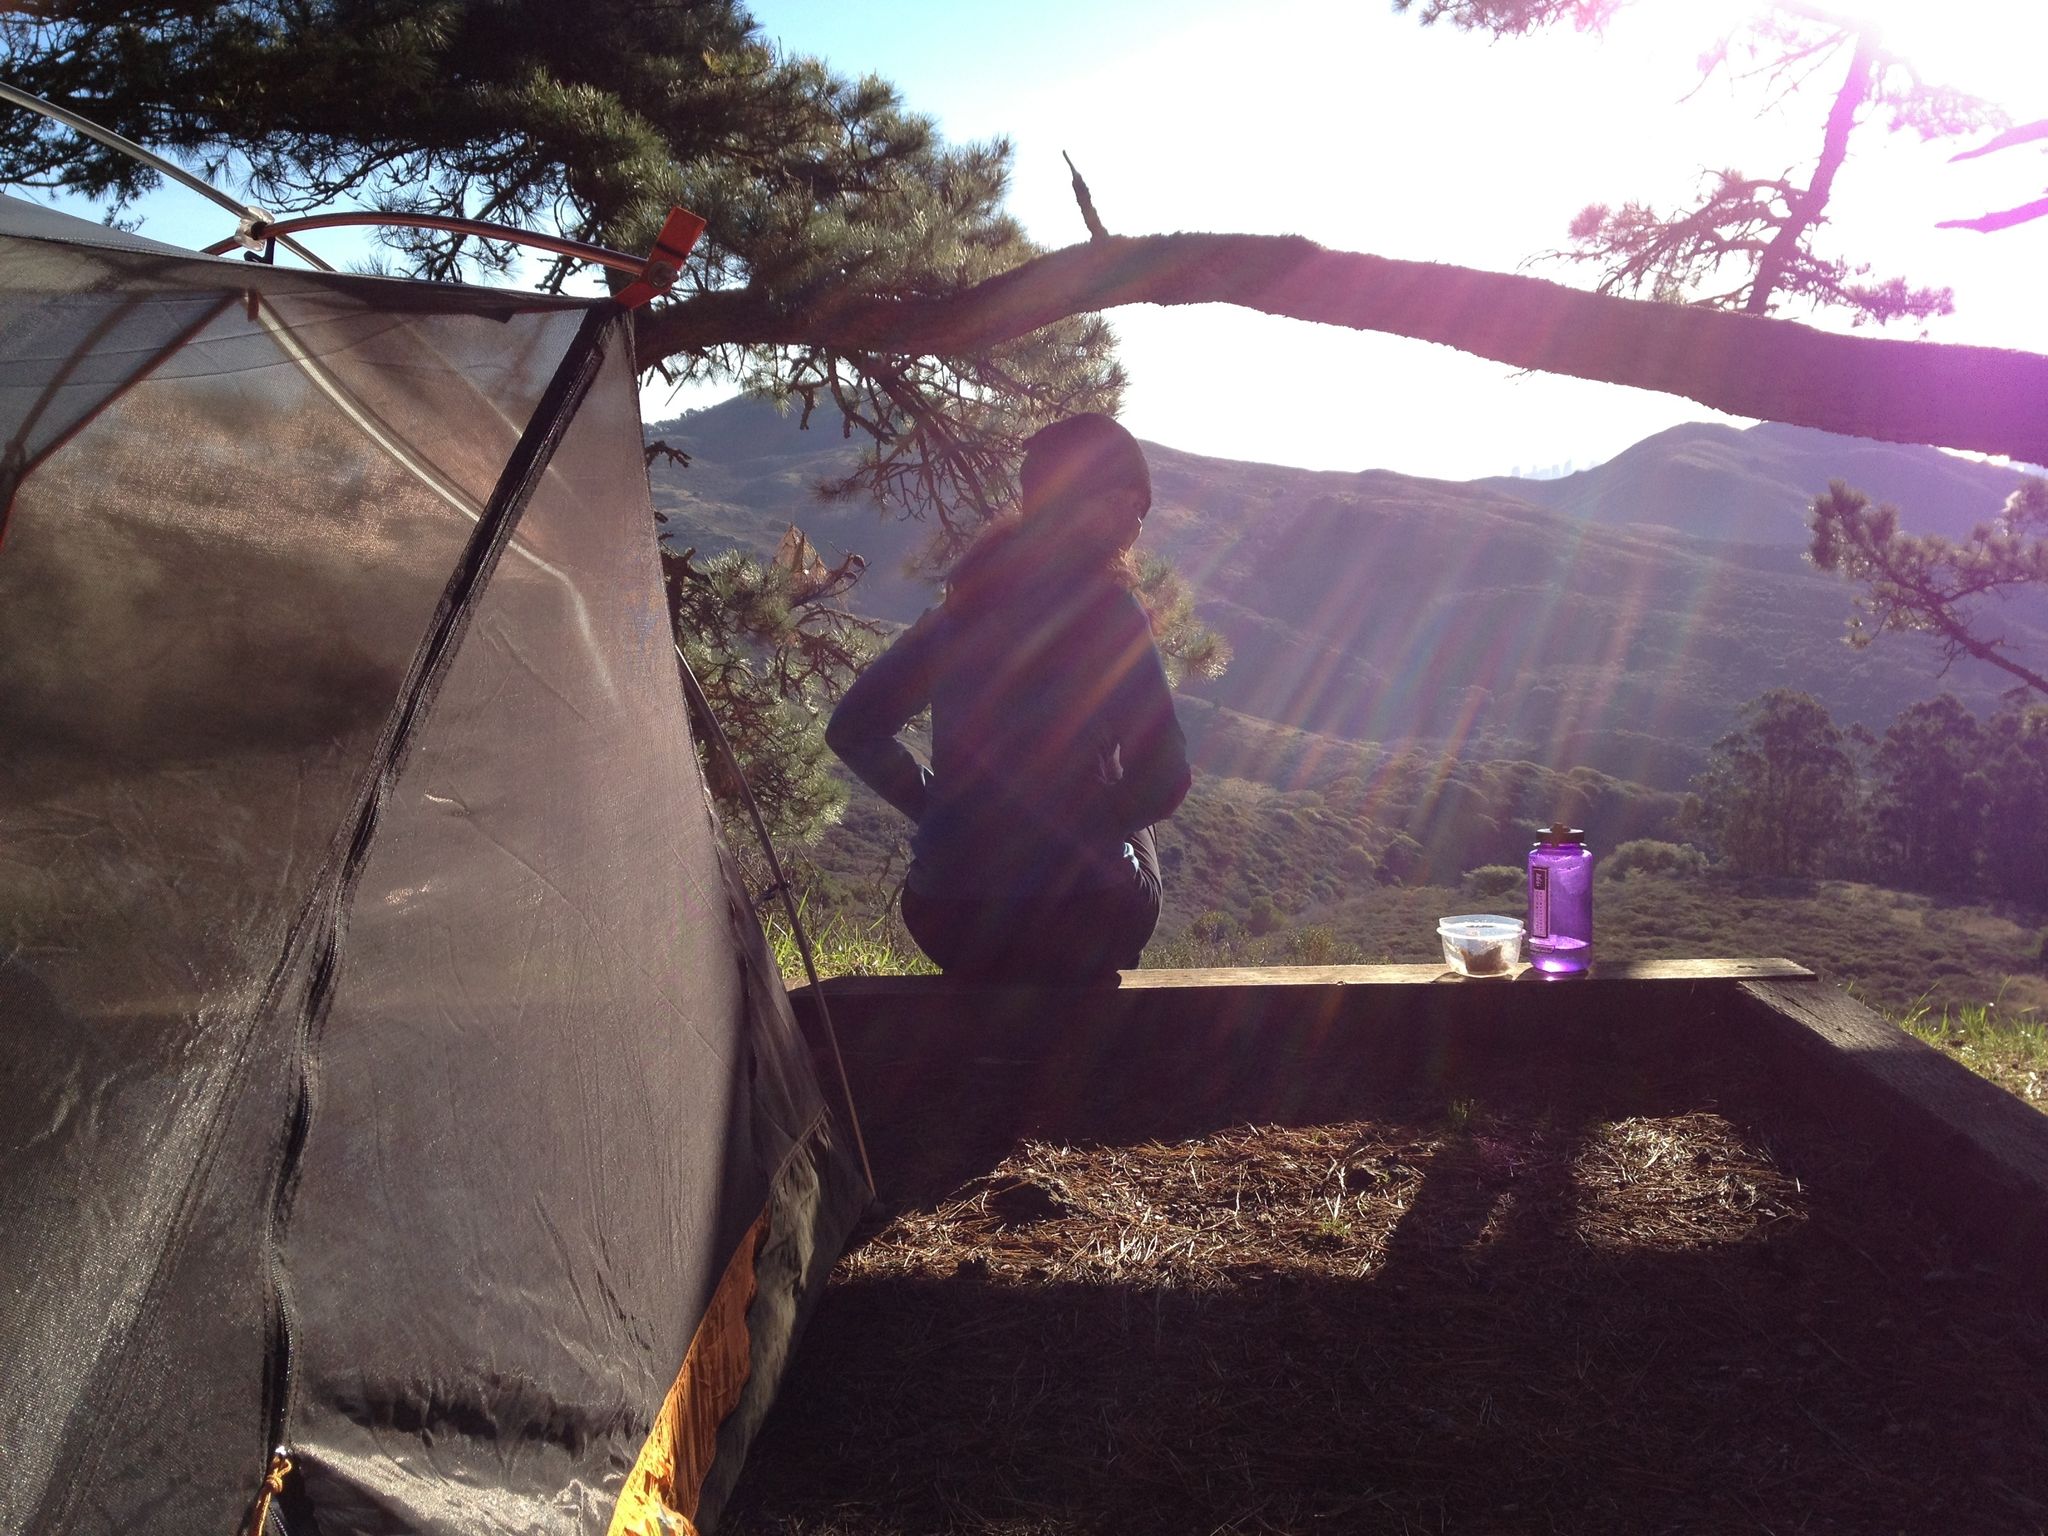 Morning at Hawk Camp